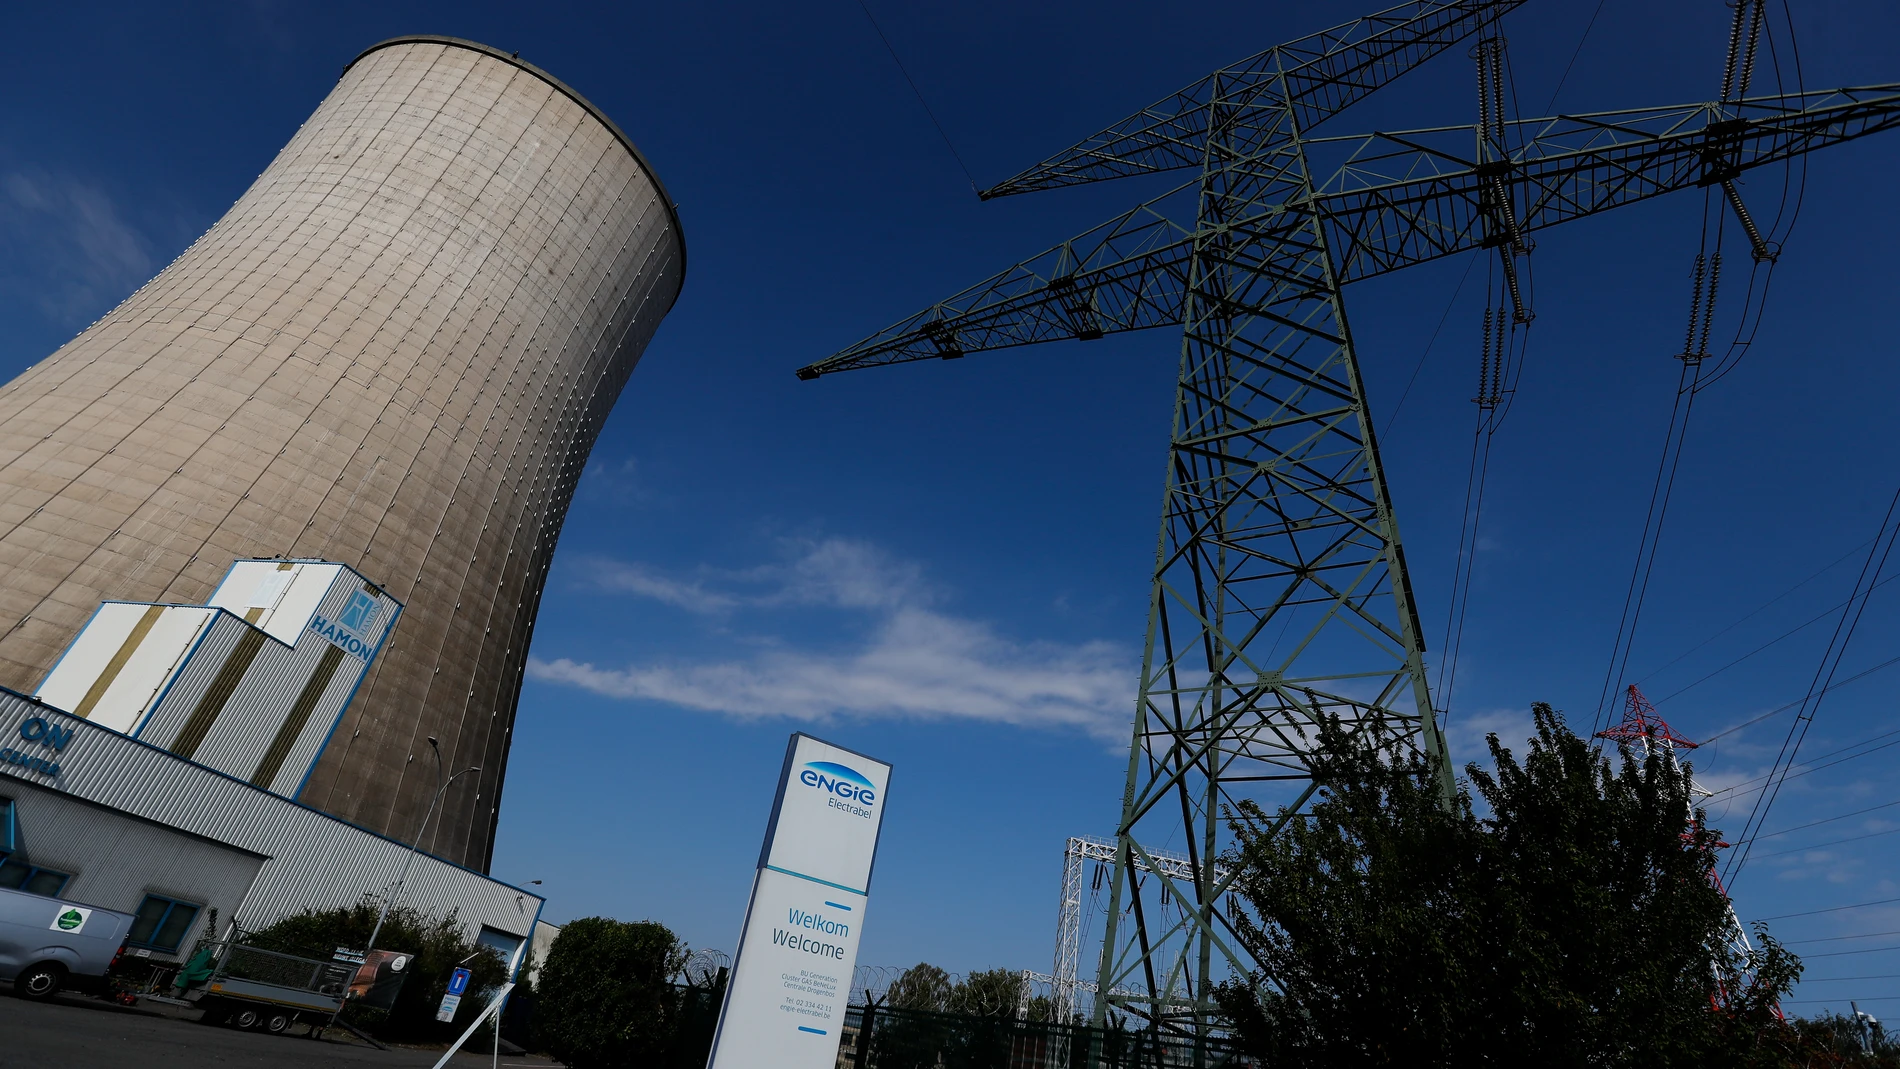 Central eléctrica de gas natural Centrale en Drogenbos